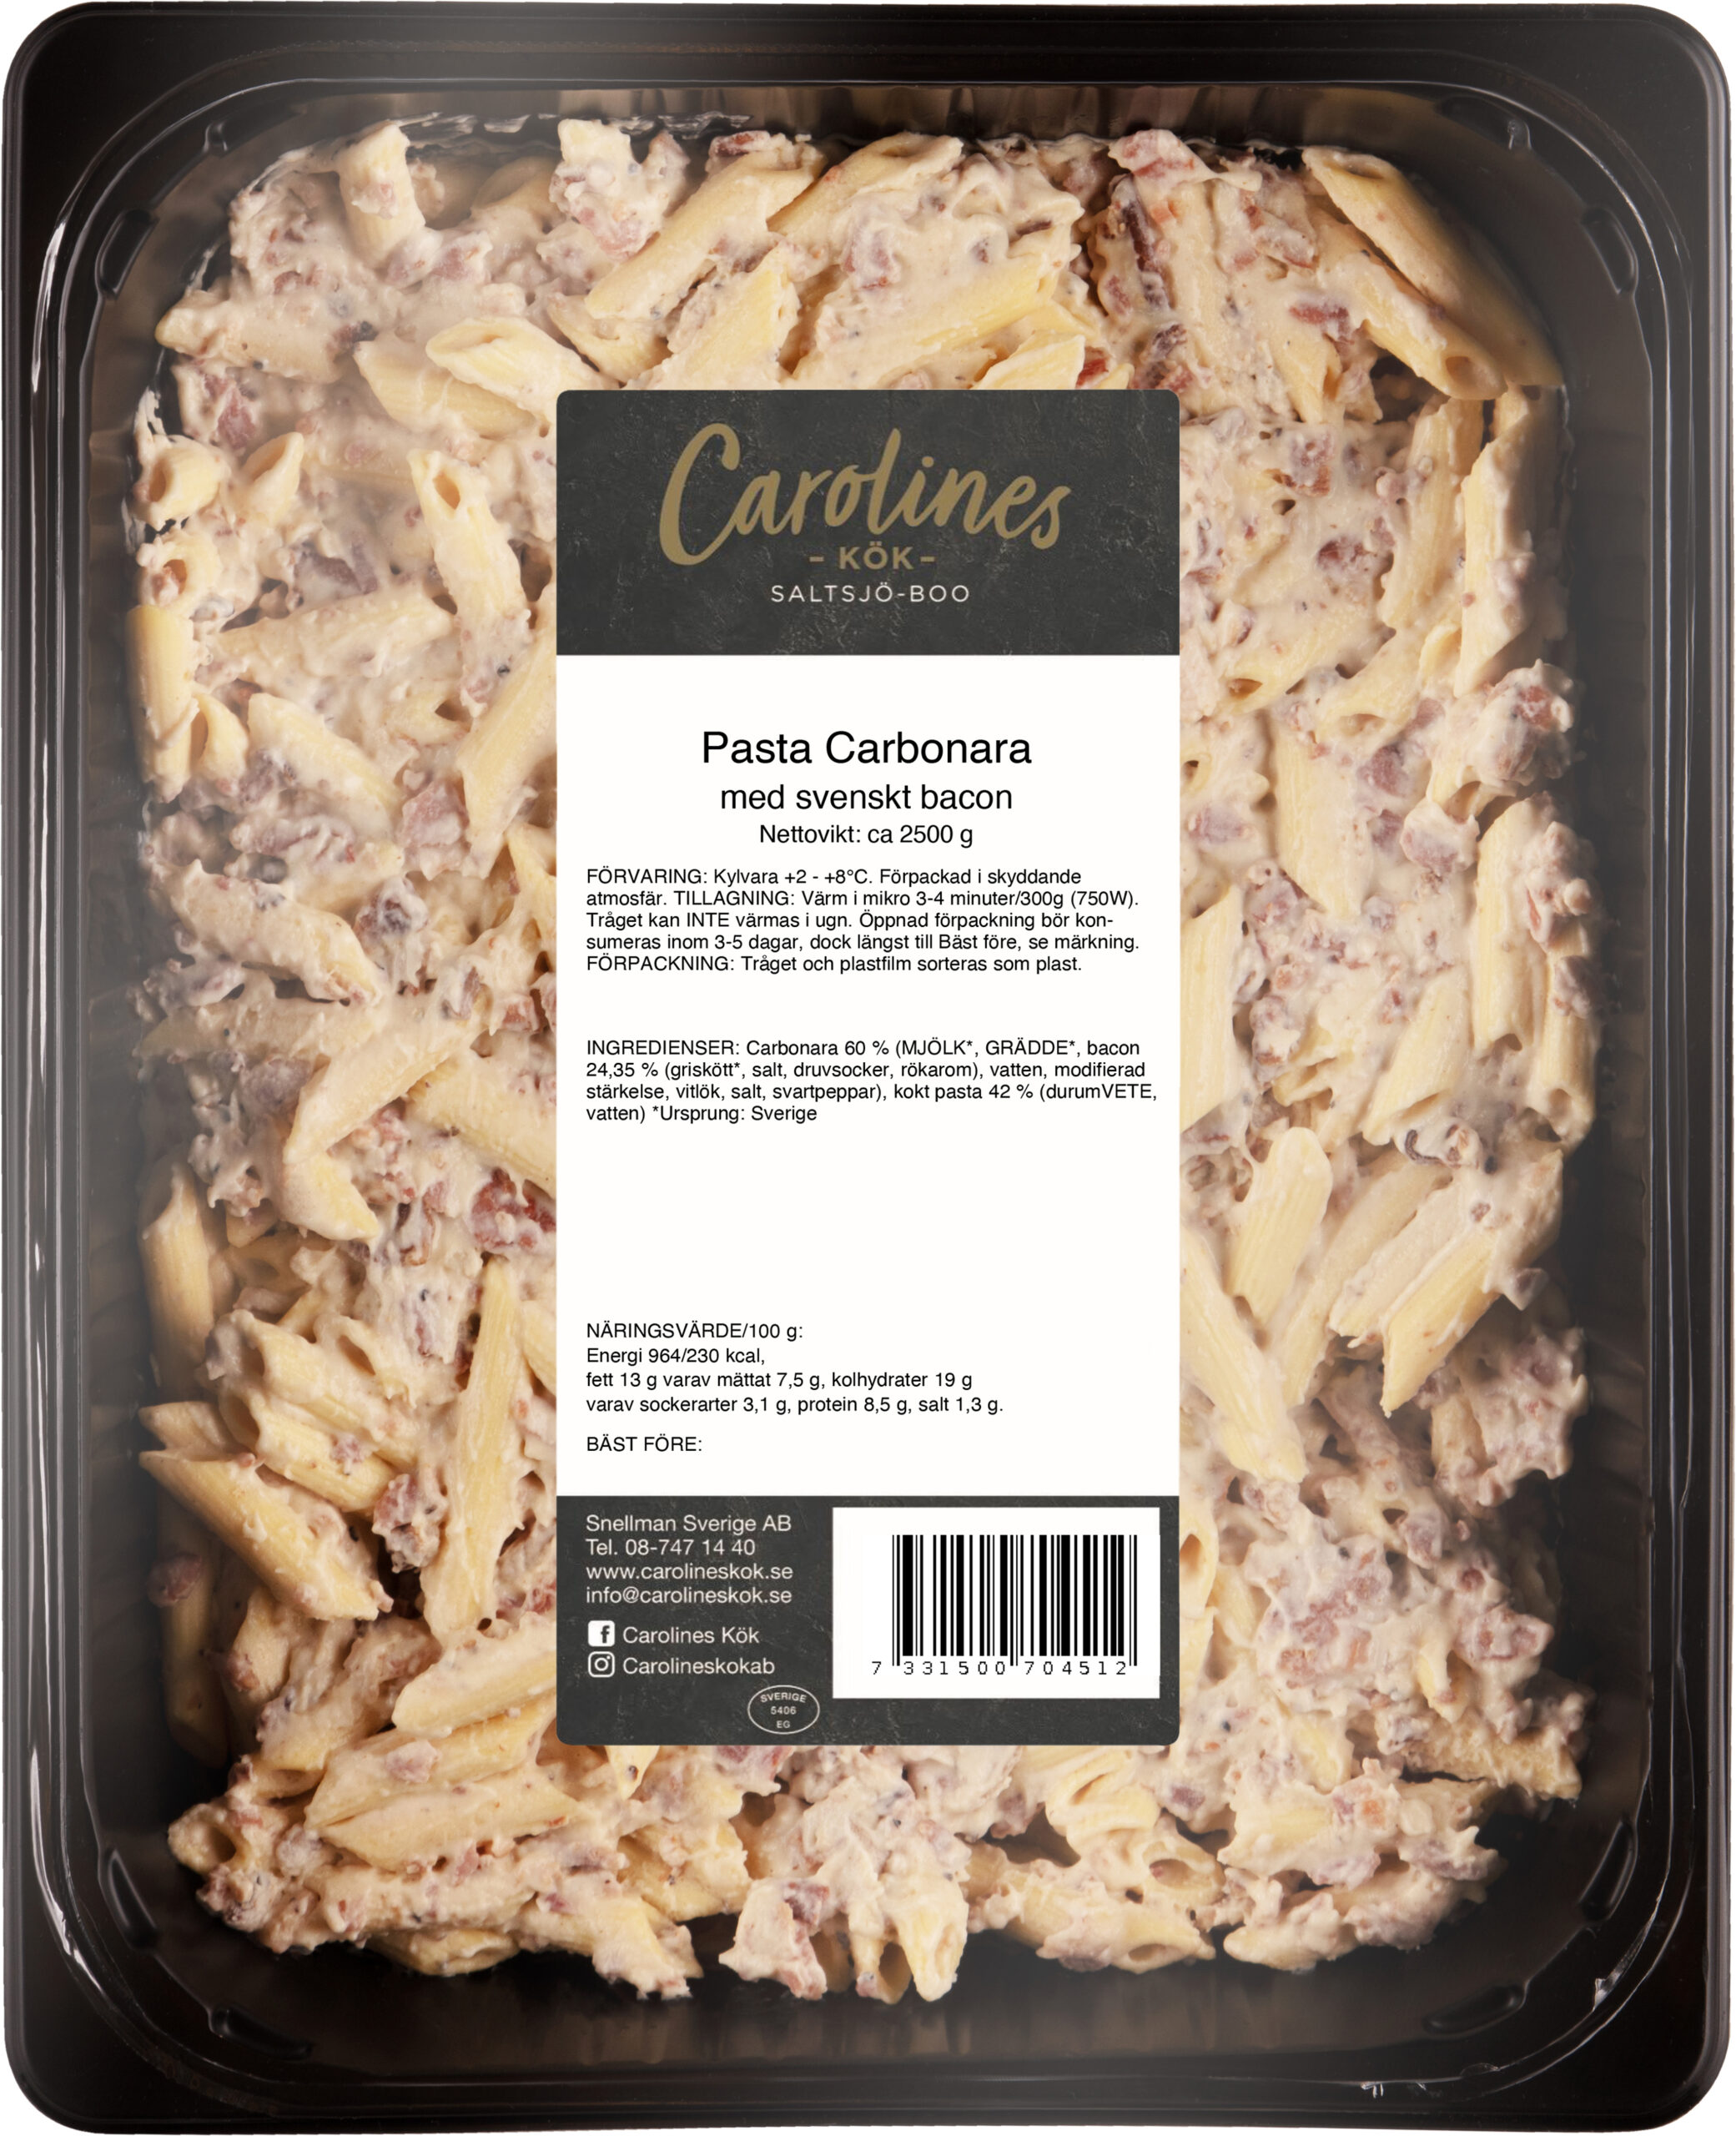 Pasta Carbonara med svenskt bacon 2,5 kg - Carolines Kök